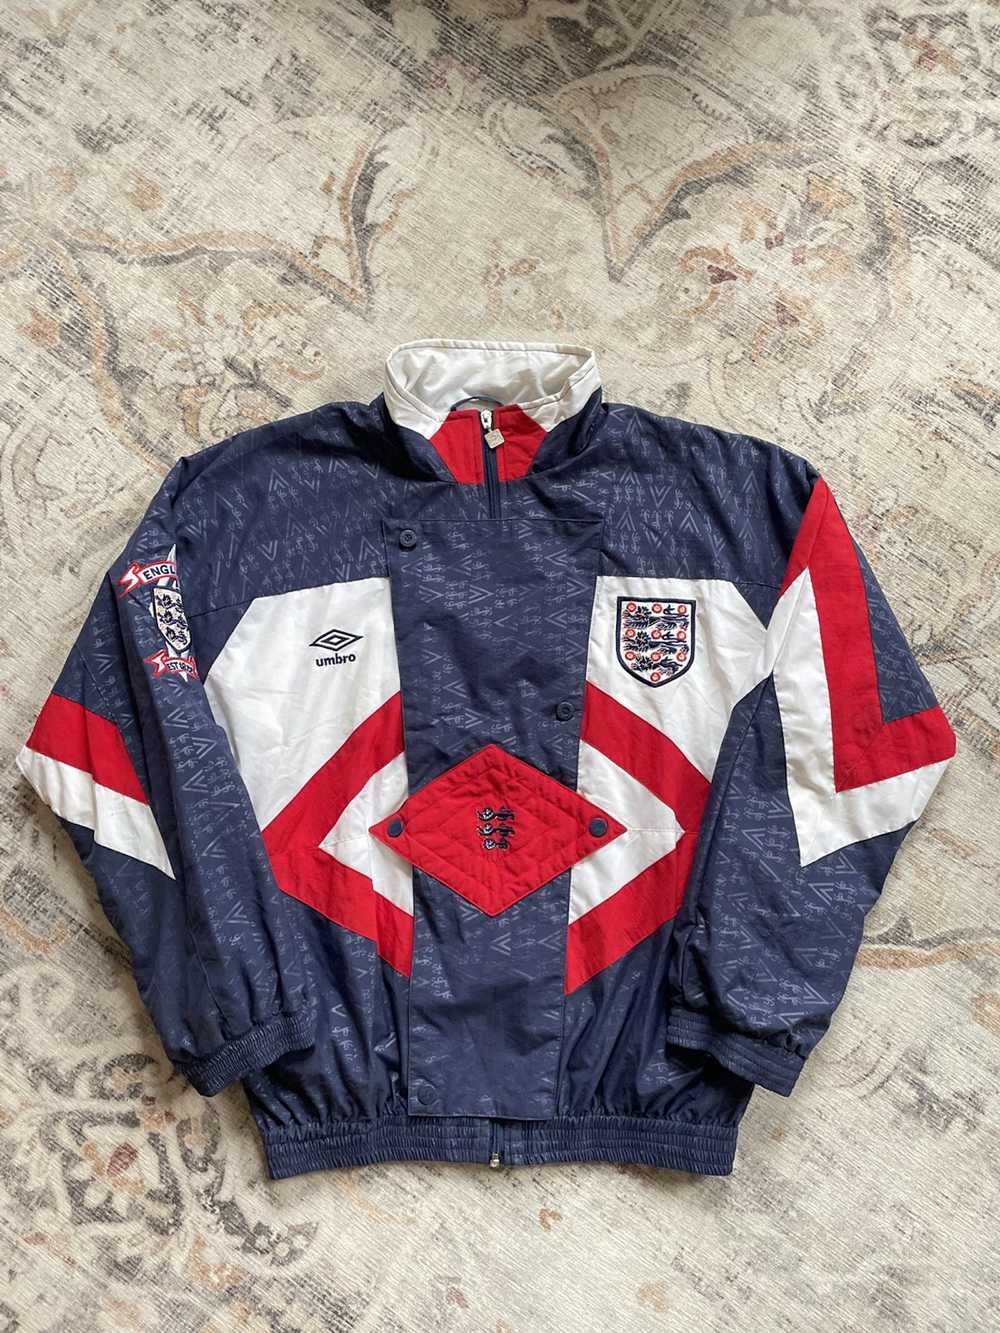 Soccer Jersey × Streetwear × Vintage Vintage Umbr… - image 1